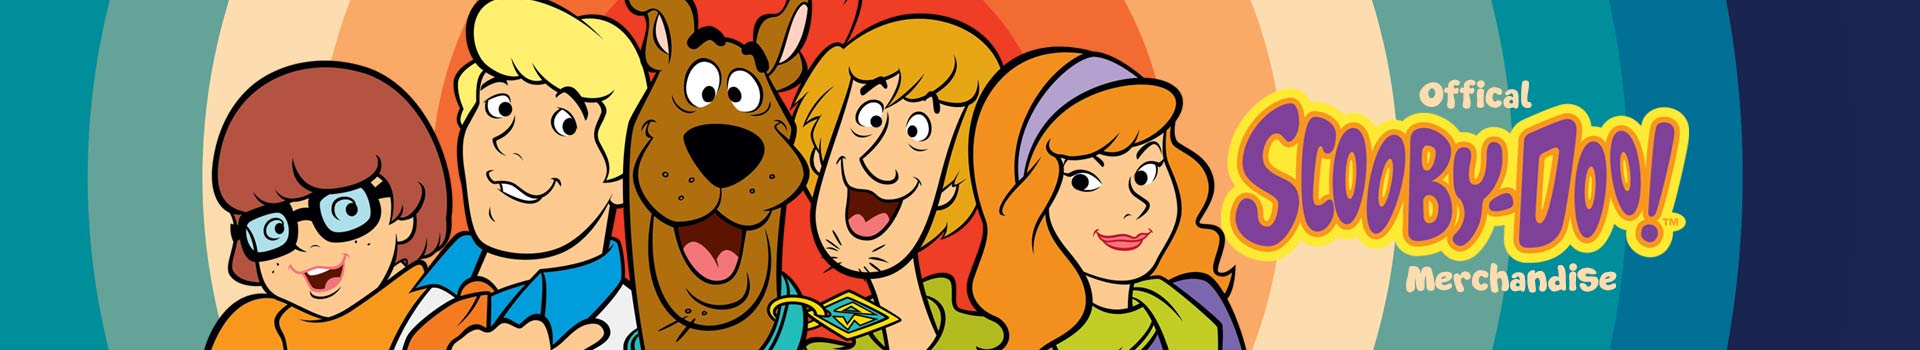 Scooby Doo - Official Merchandise